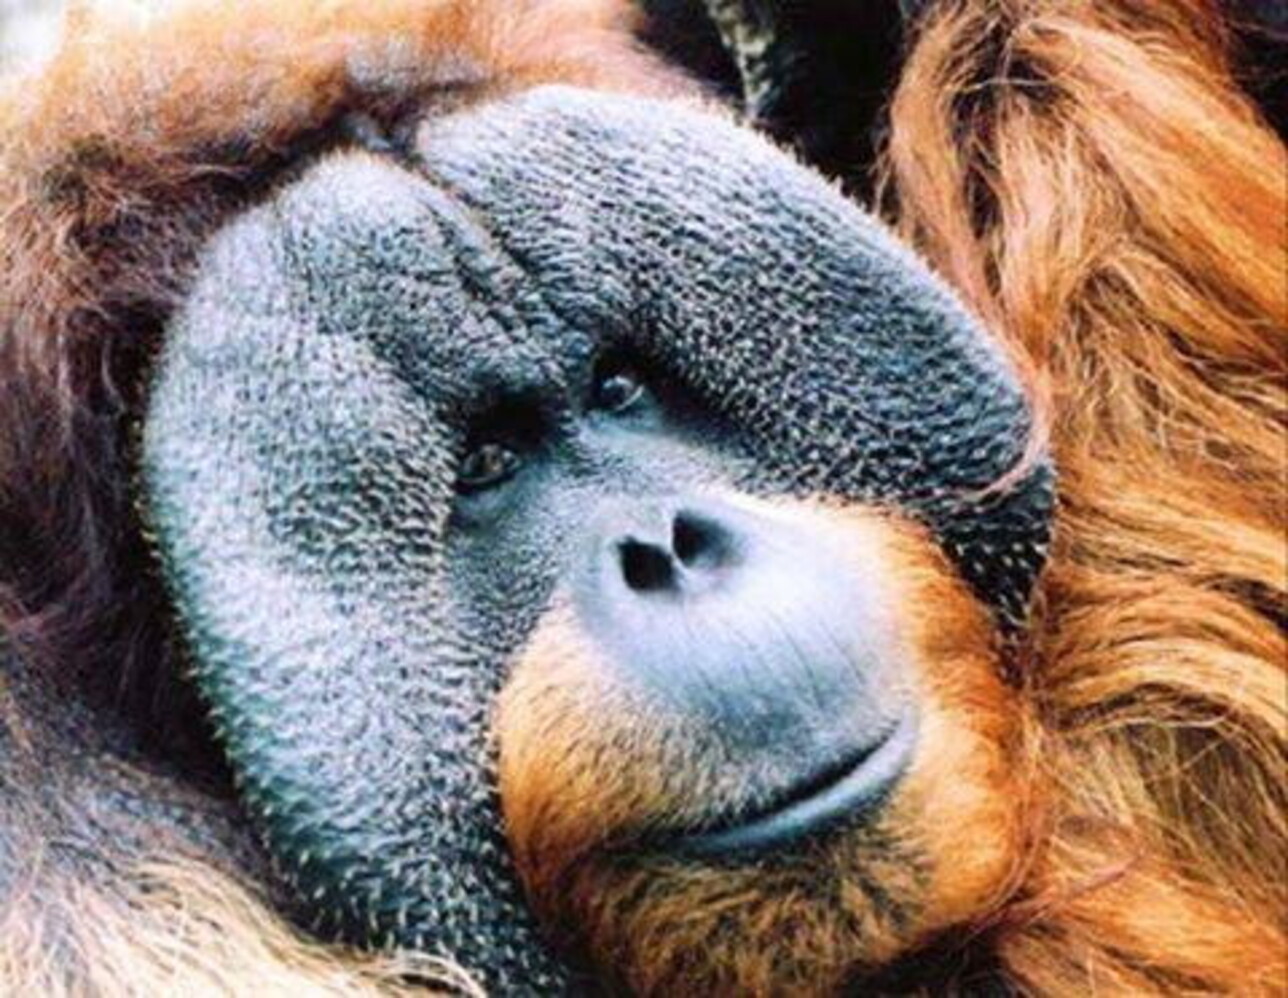 ecco l'orango che si cura una ferita con le erbe: è il primo animale a curarsi da solo